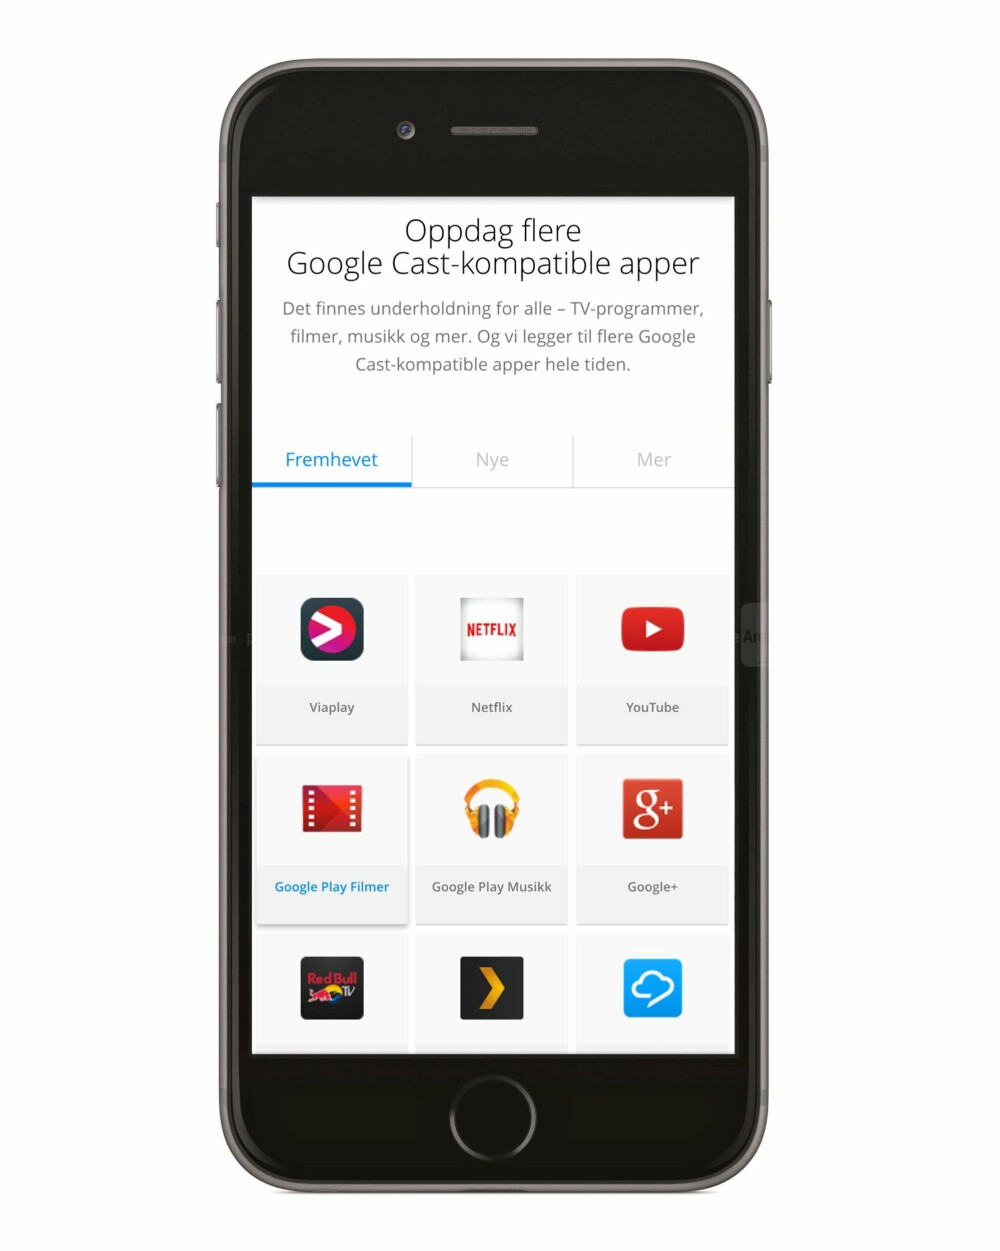 APPSTYRT: Siden støtten for Chromecast ligger i appene, er det ikke noe problem å bruke Chromecast på iPhone også.